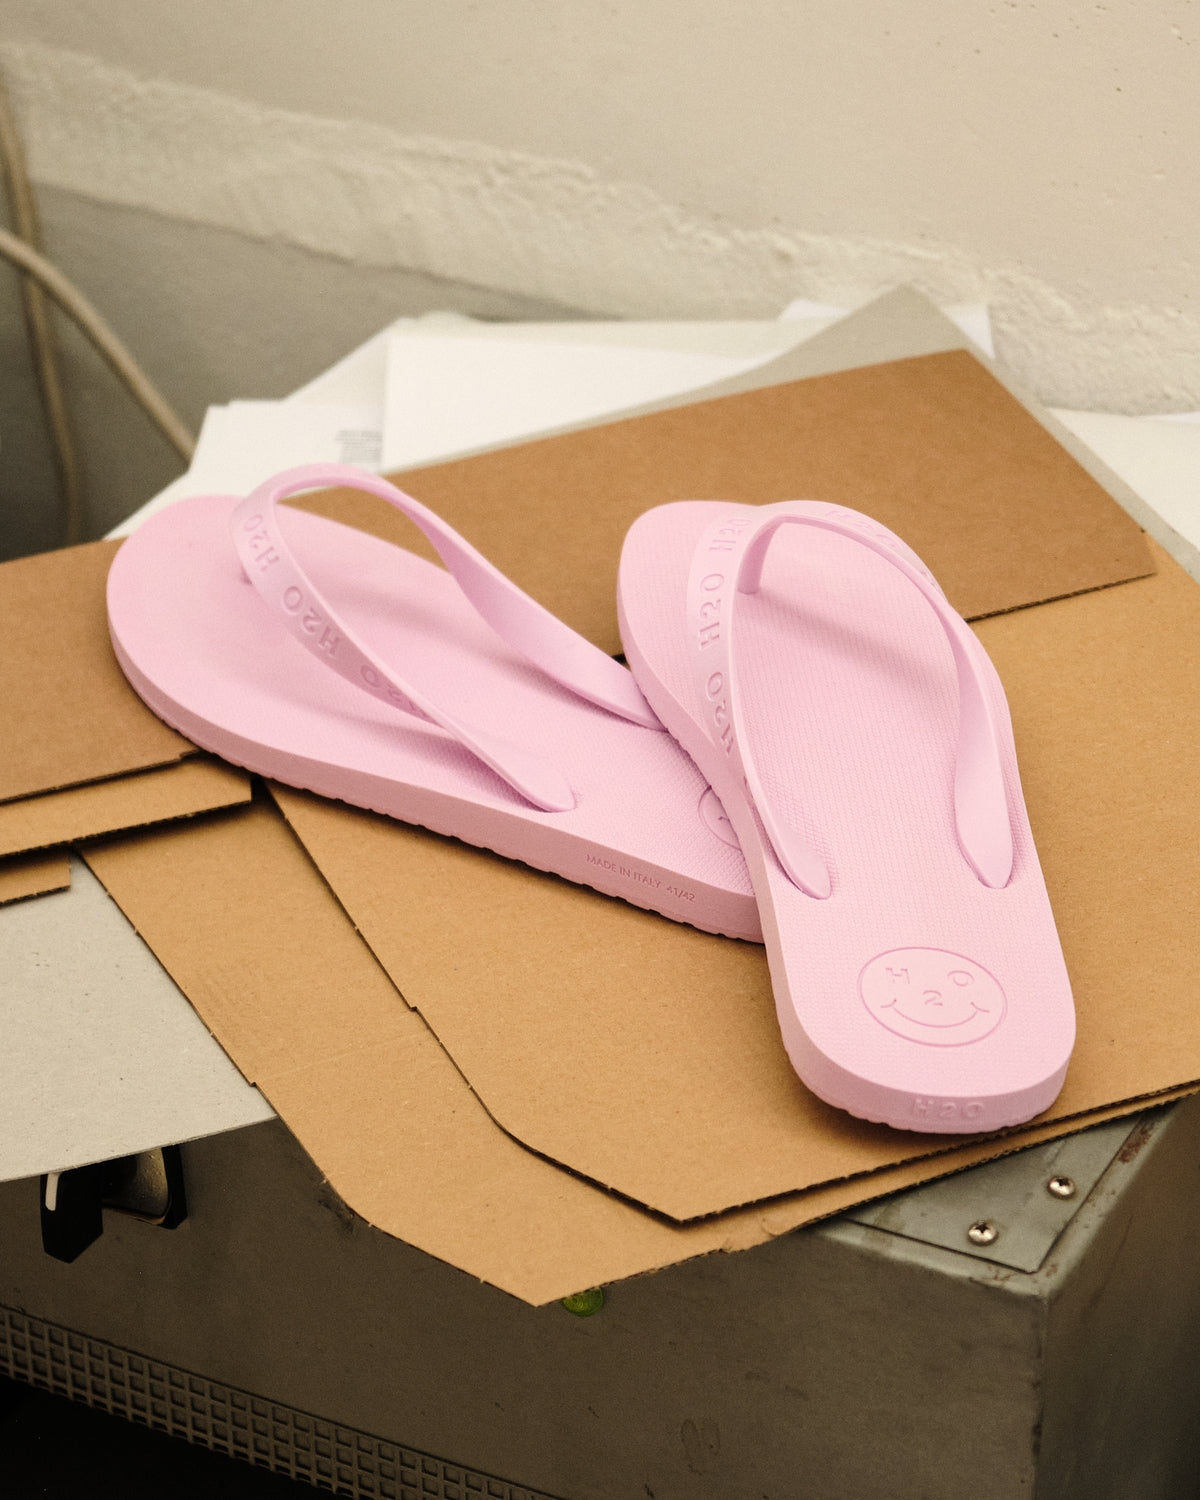 Flip Flop - Light Pink